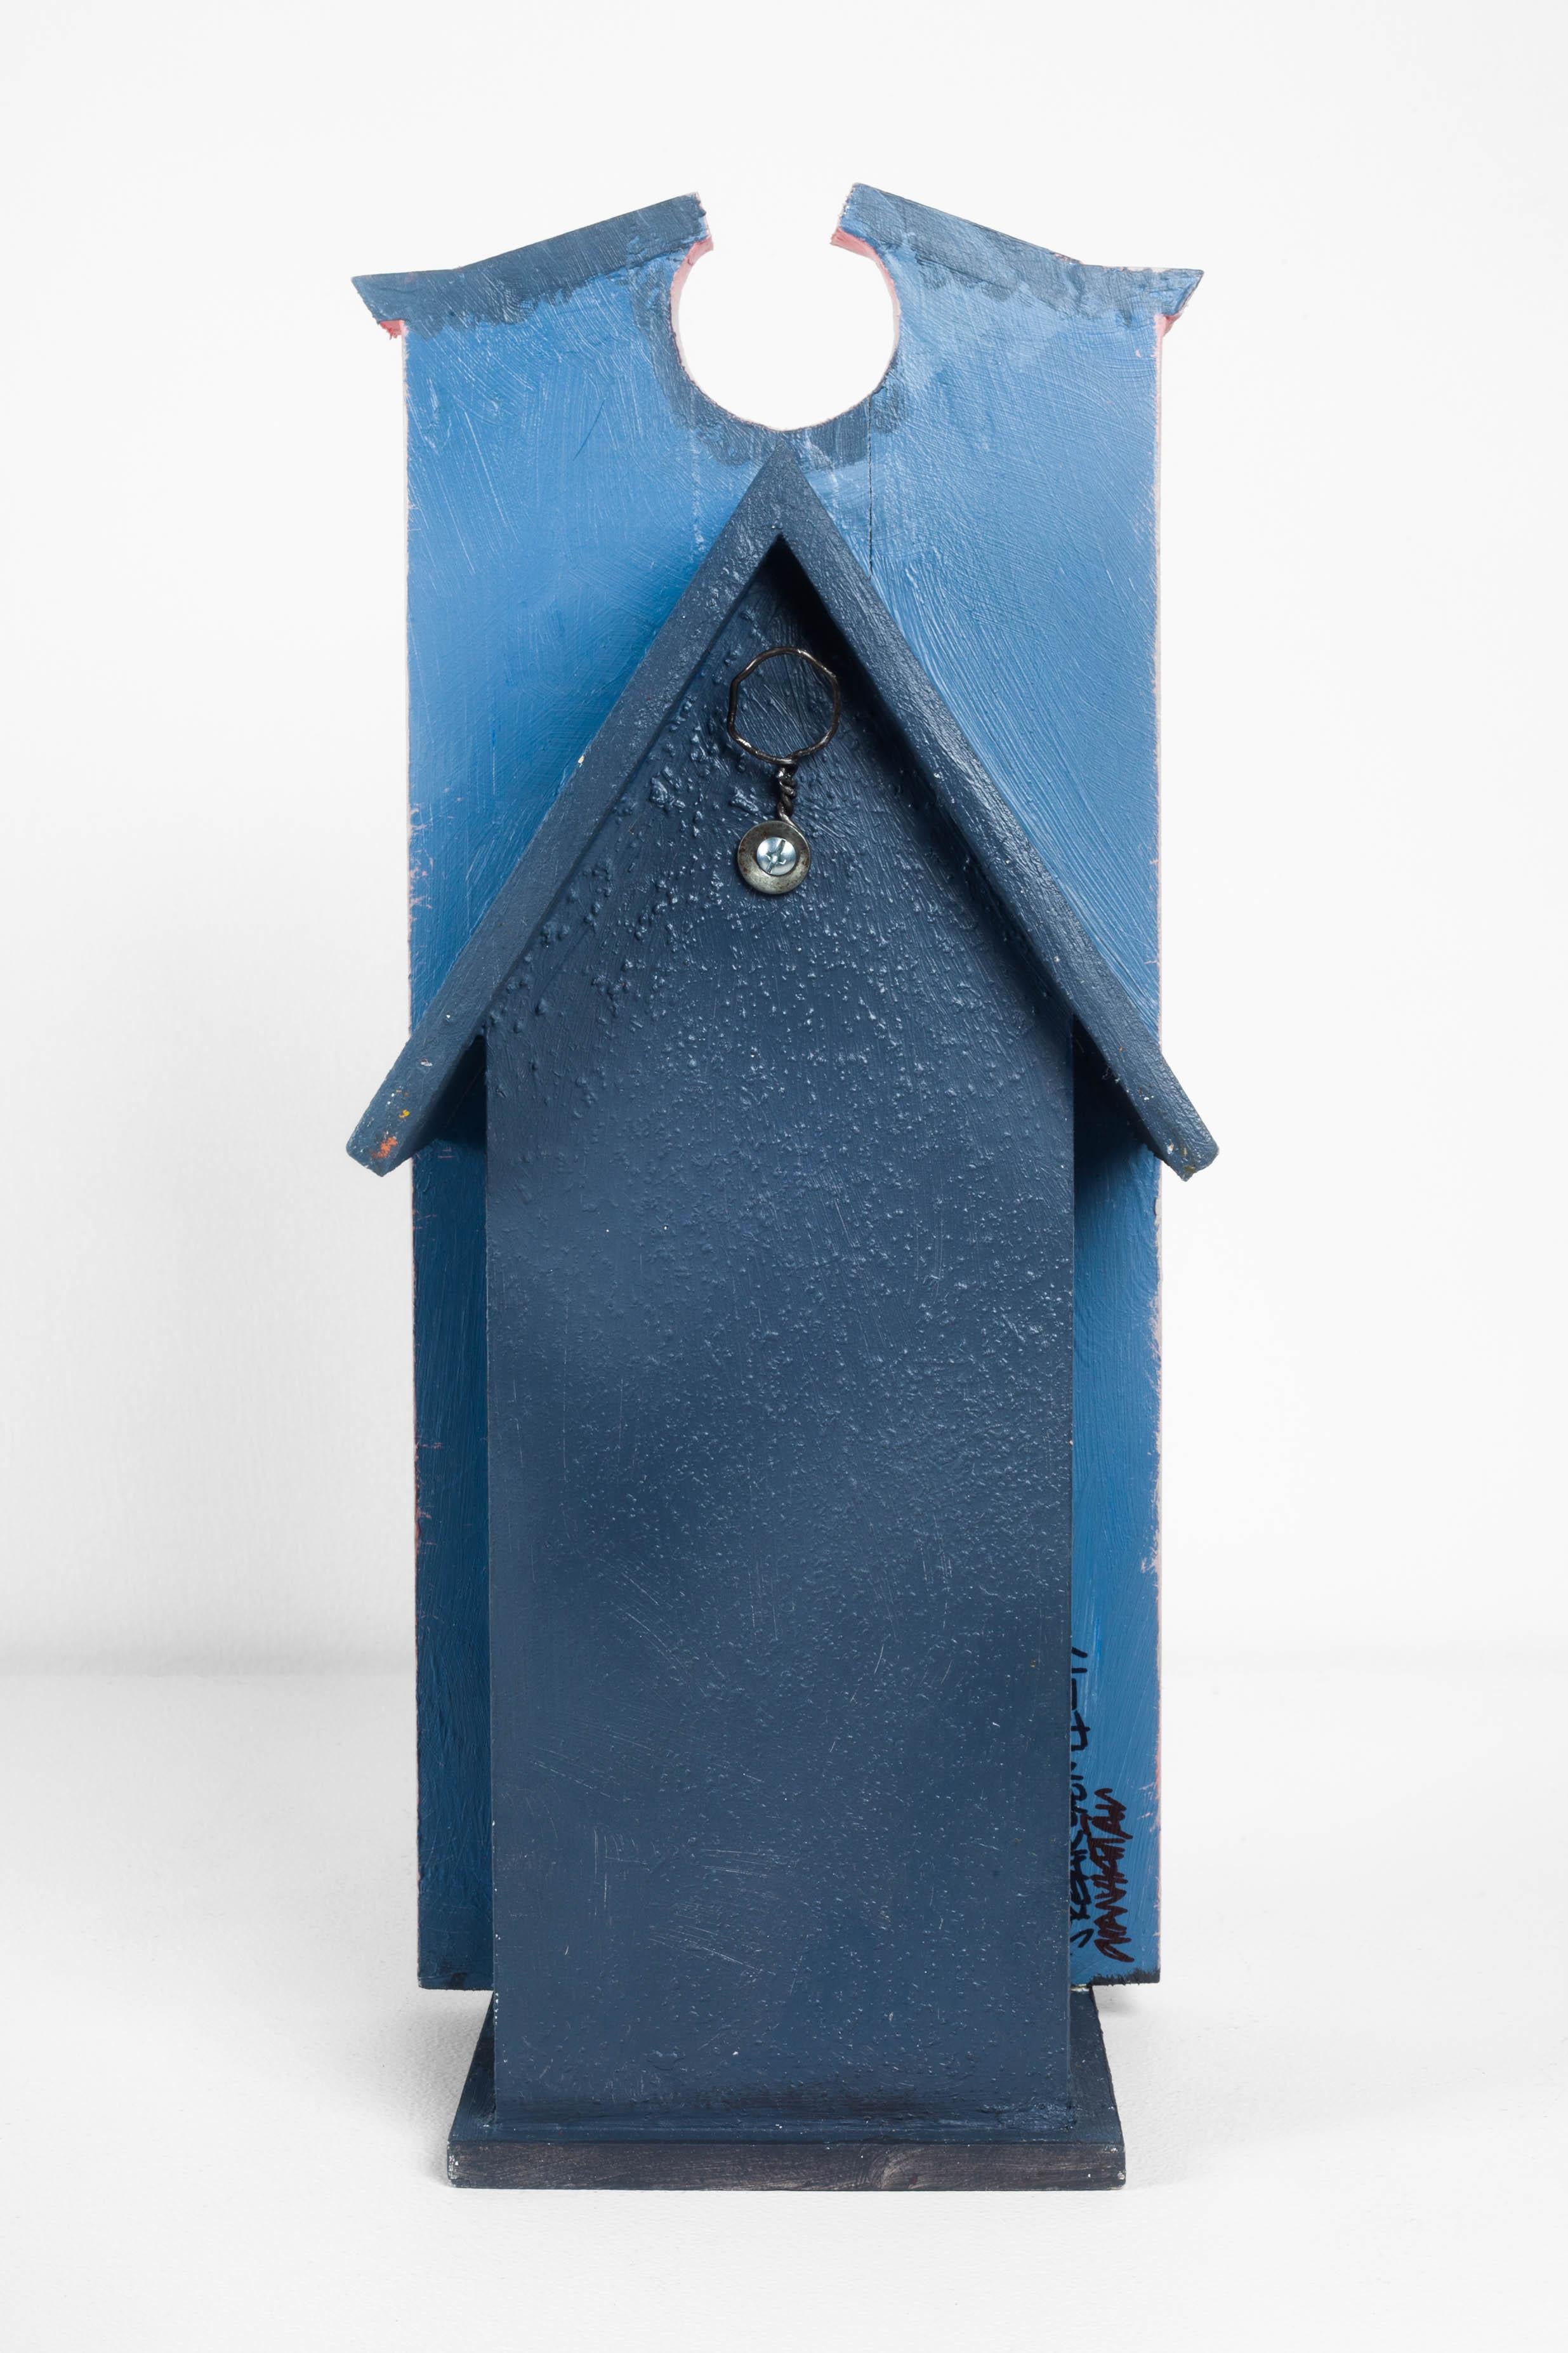 Bois « The Manhattan birdhouse » de Jason Sargenti, 2020, États-Unis en vente